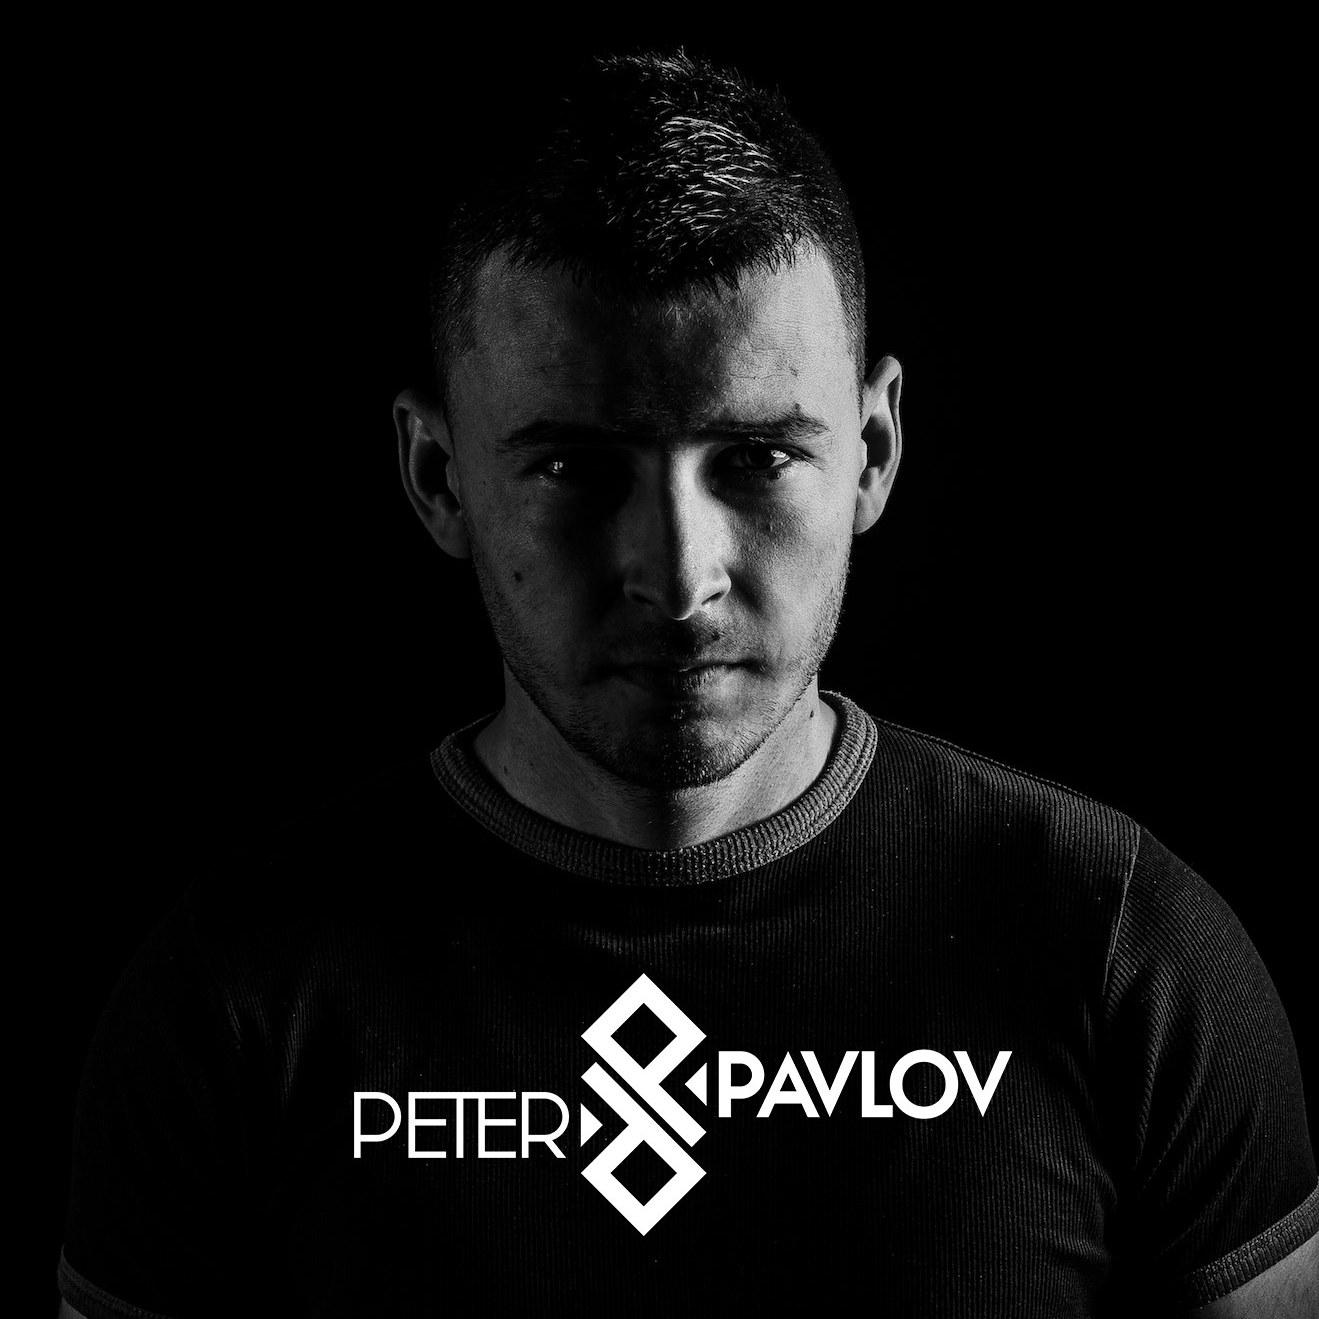 Peter Pavlov